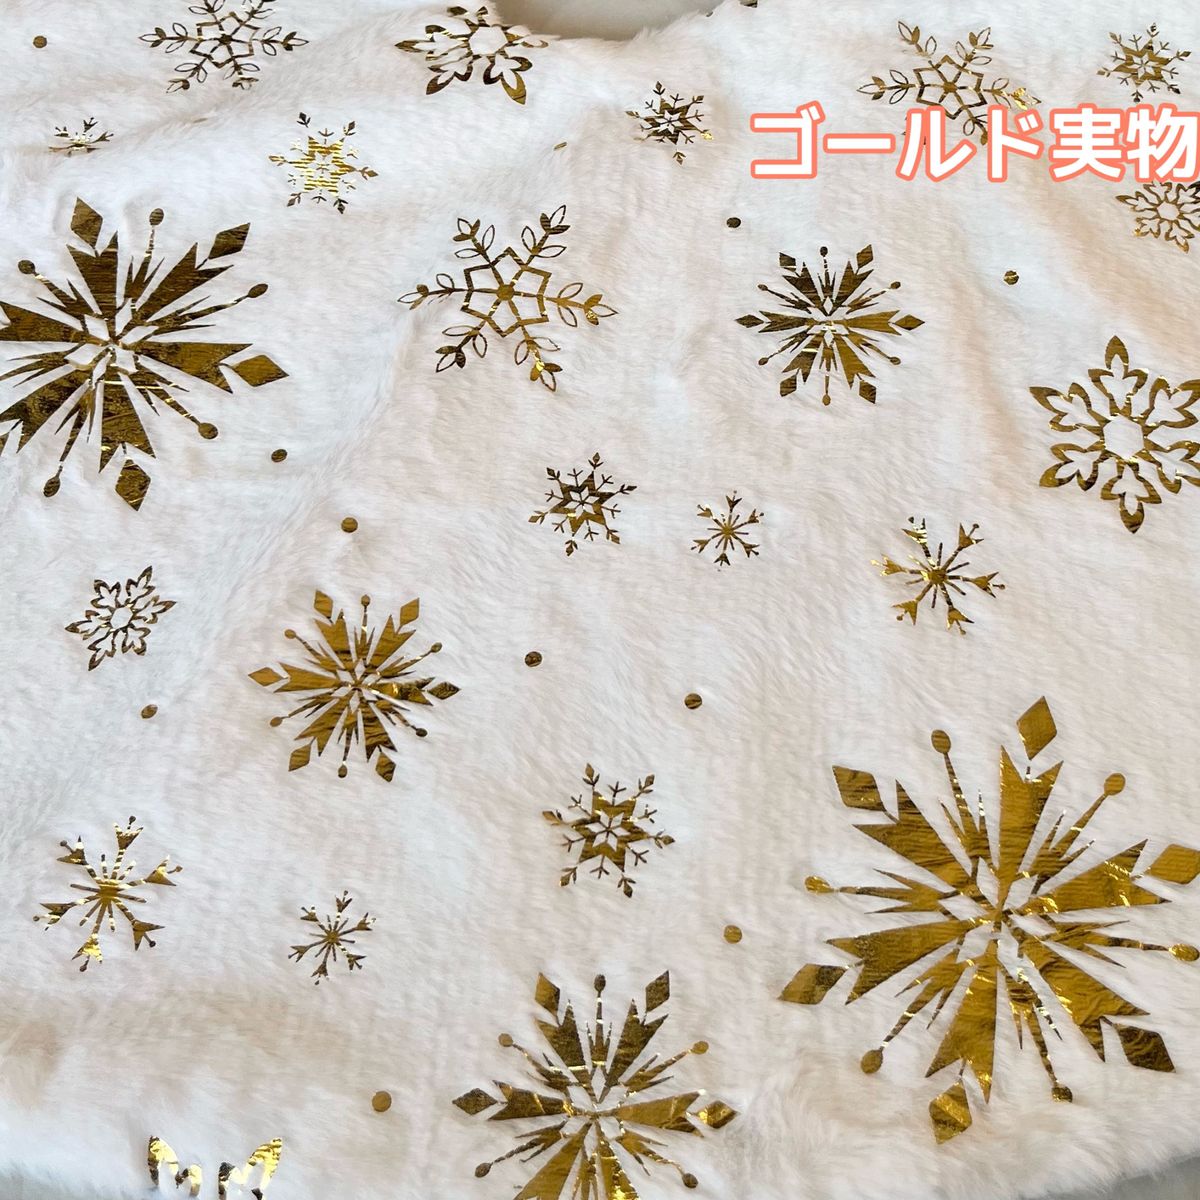 ツリースカート 78cm クリスマスツリー 足元隠し 装飾 ツリーマット ゴールド 金 白 プレゼント 雪 結晶 インテリア